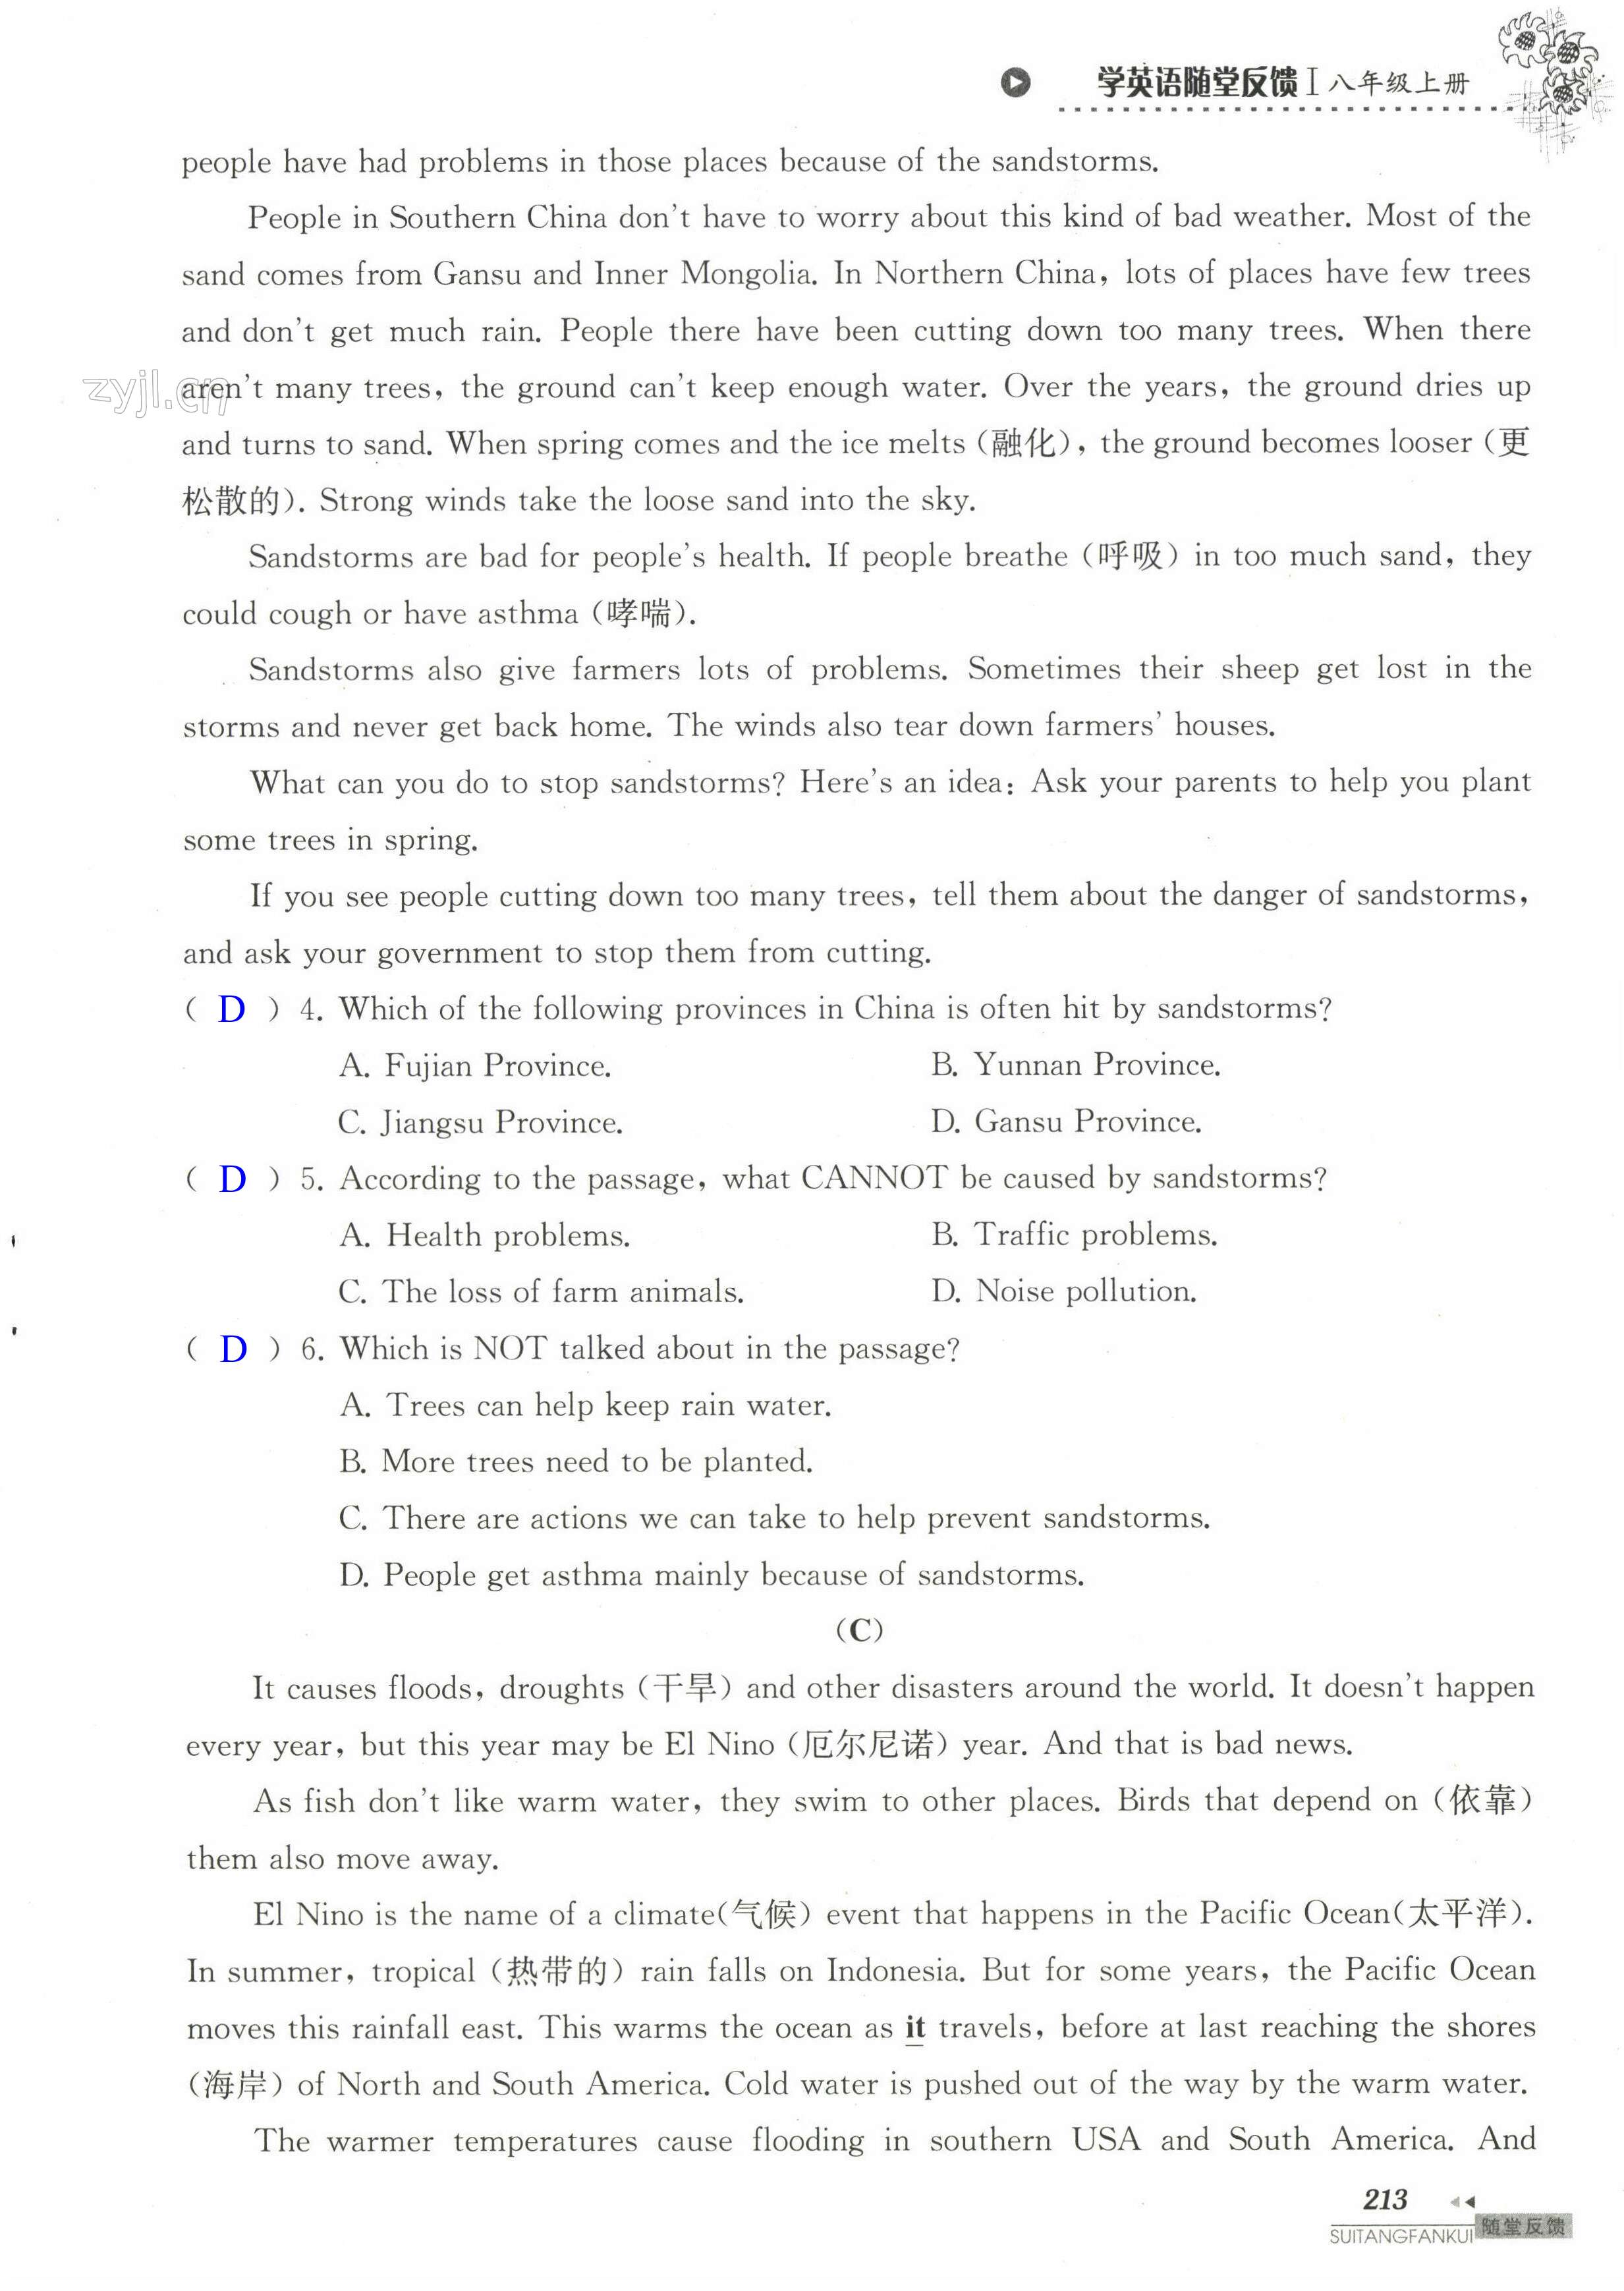 单元综合测试卷 Test for Unit 8 of 8A - 第213页